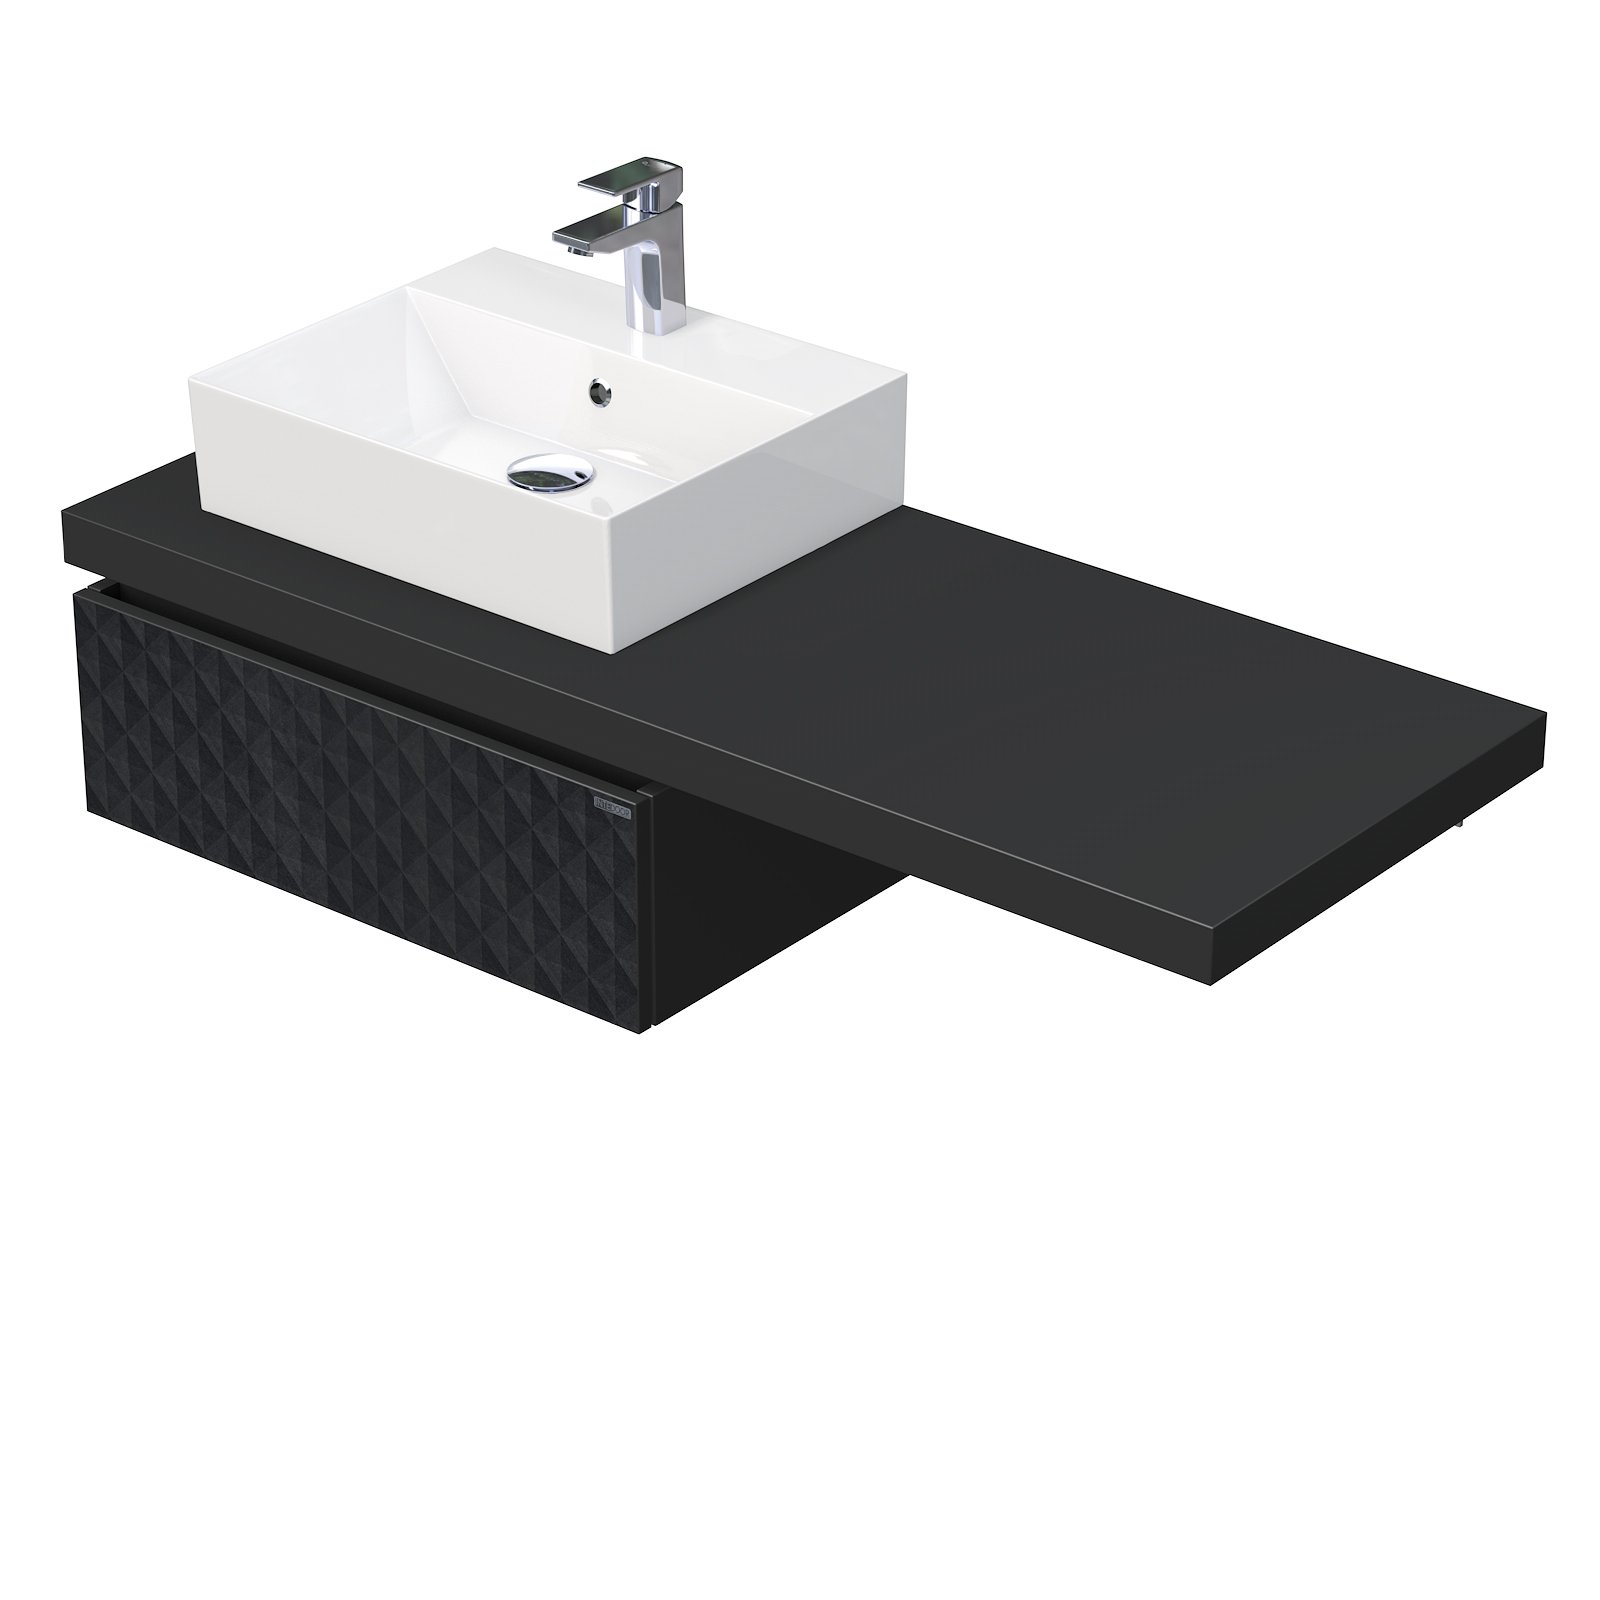 Desk 3D - skříňka 130 cm s umyvadlem na desku vlevo, 1 zásuvka, závěsná, černá DE 54 3D 130 L STORM 1Z U129